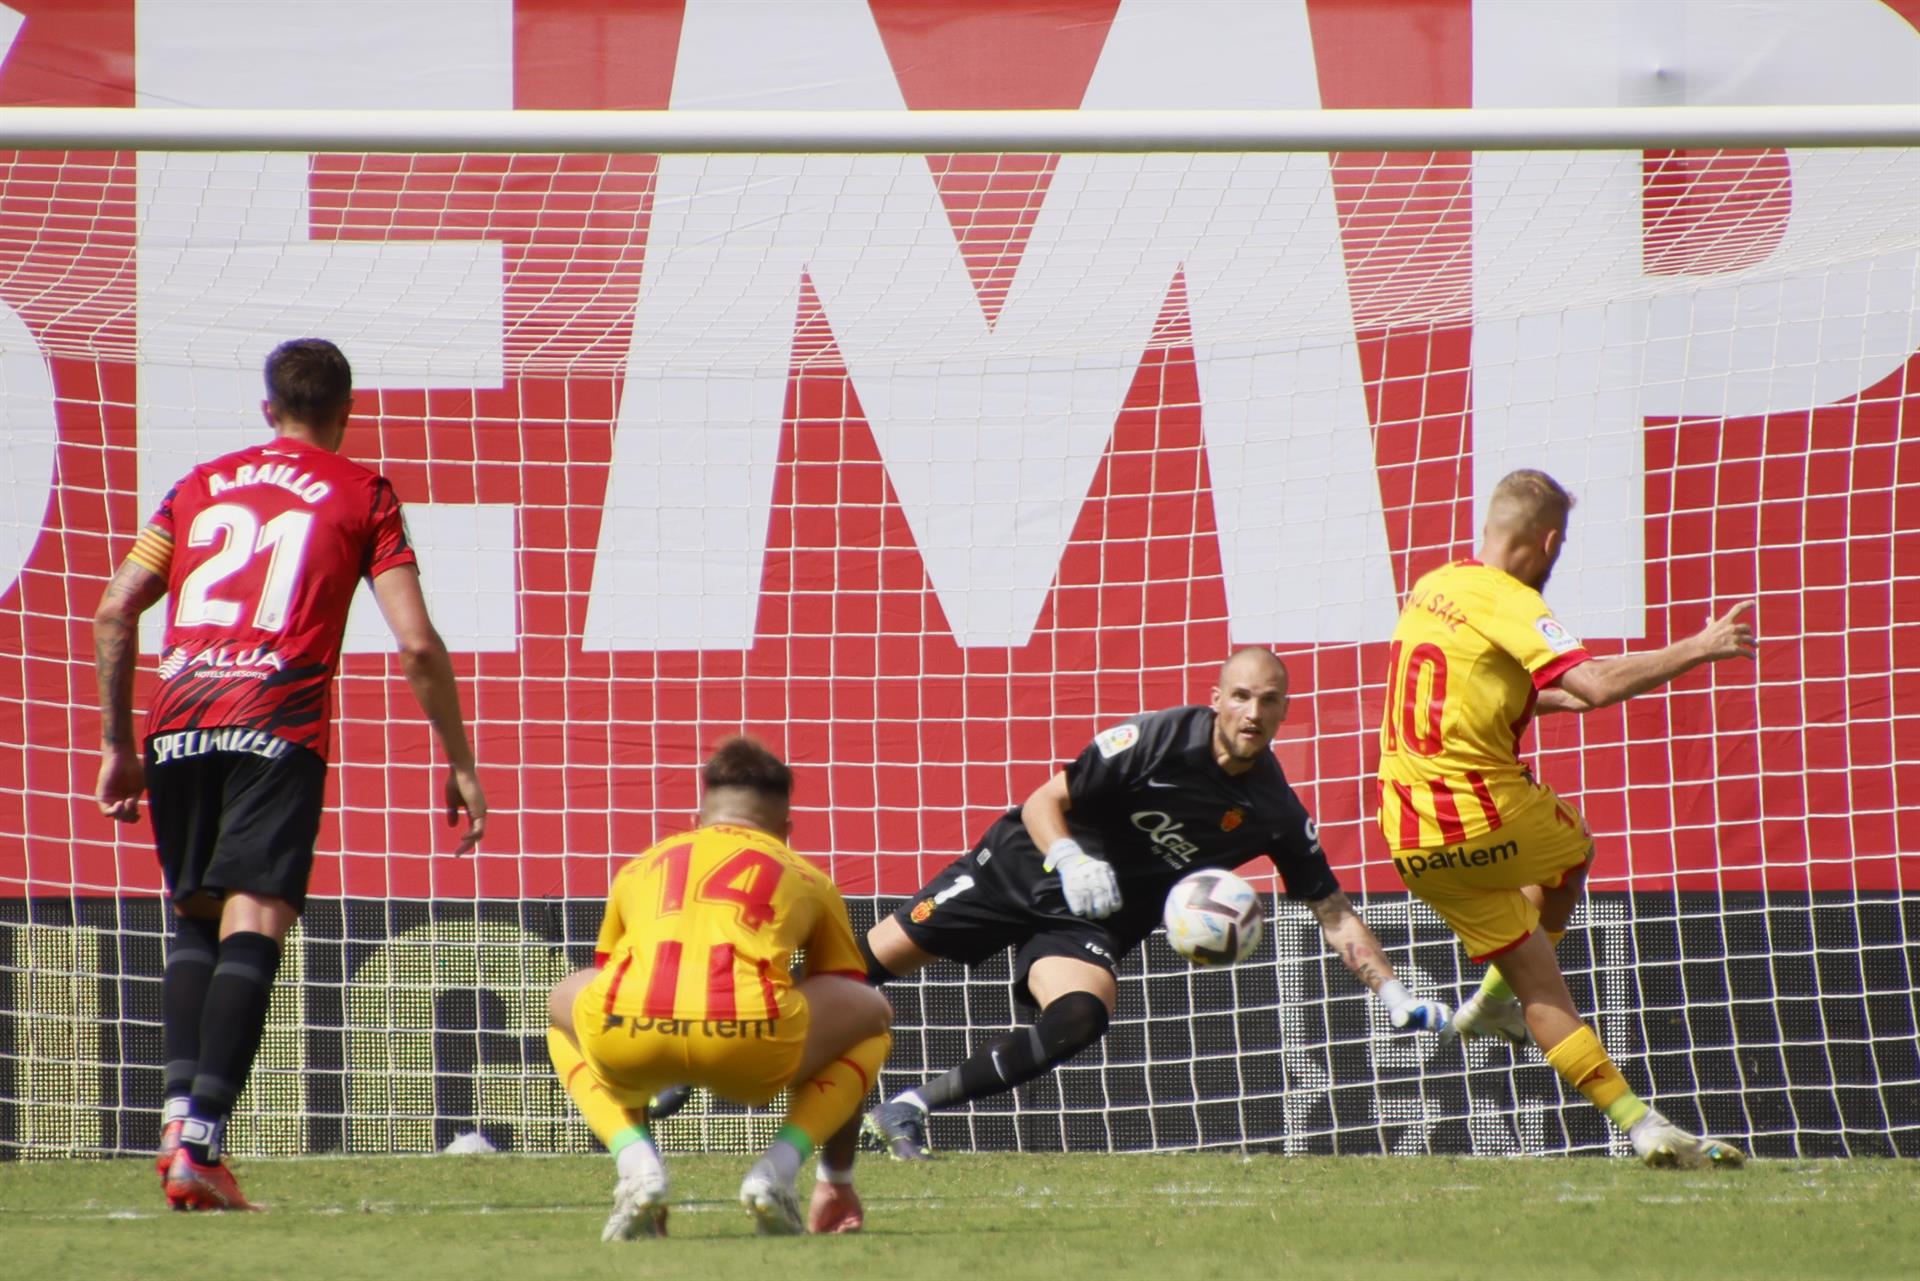 El jugador del Girona Samuel Sáiz marca el gol del empate ante el Mallorca durante el partido de LaLiga Santander disputado en el Estadi de Son Moix en Palma de Mallorca. EFE/Cati Cladera
